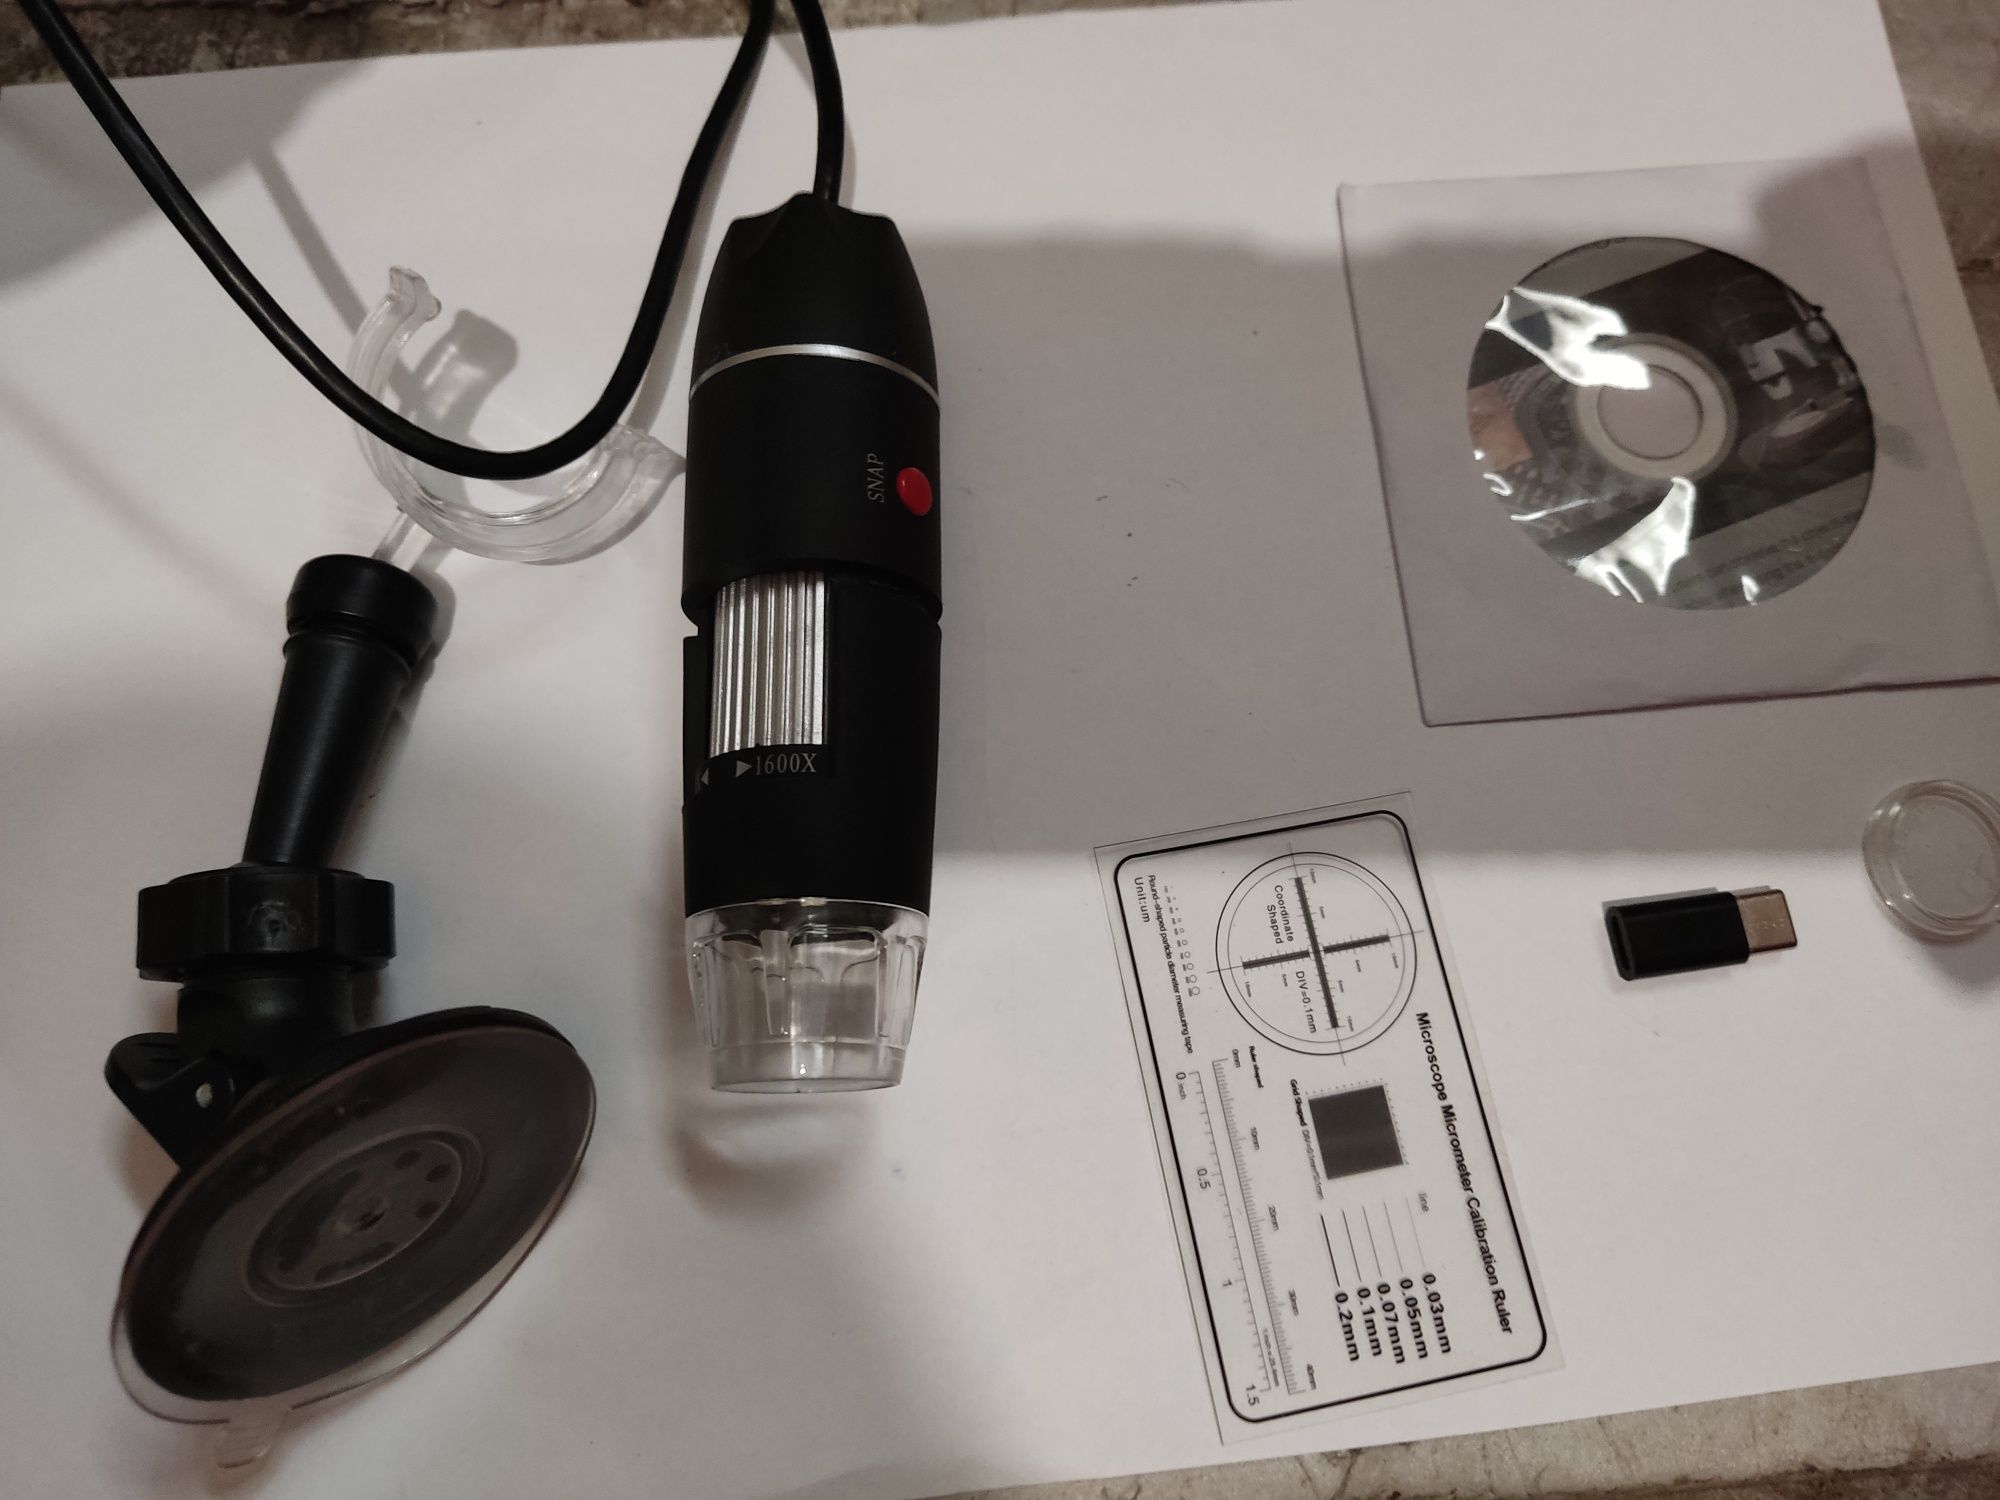 USB микроскоп электронный цифровой с увеличением 1600x